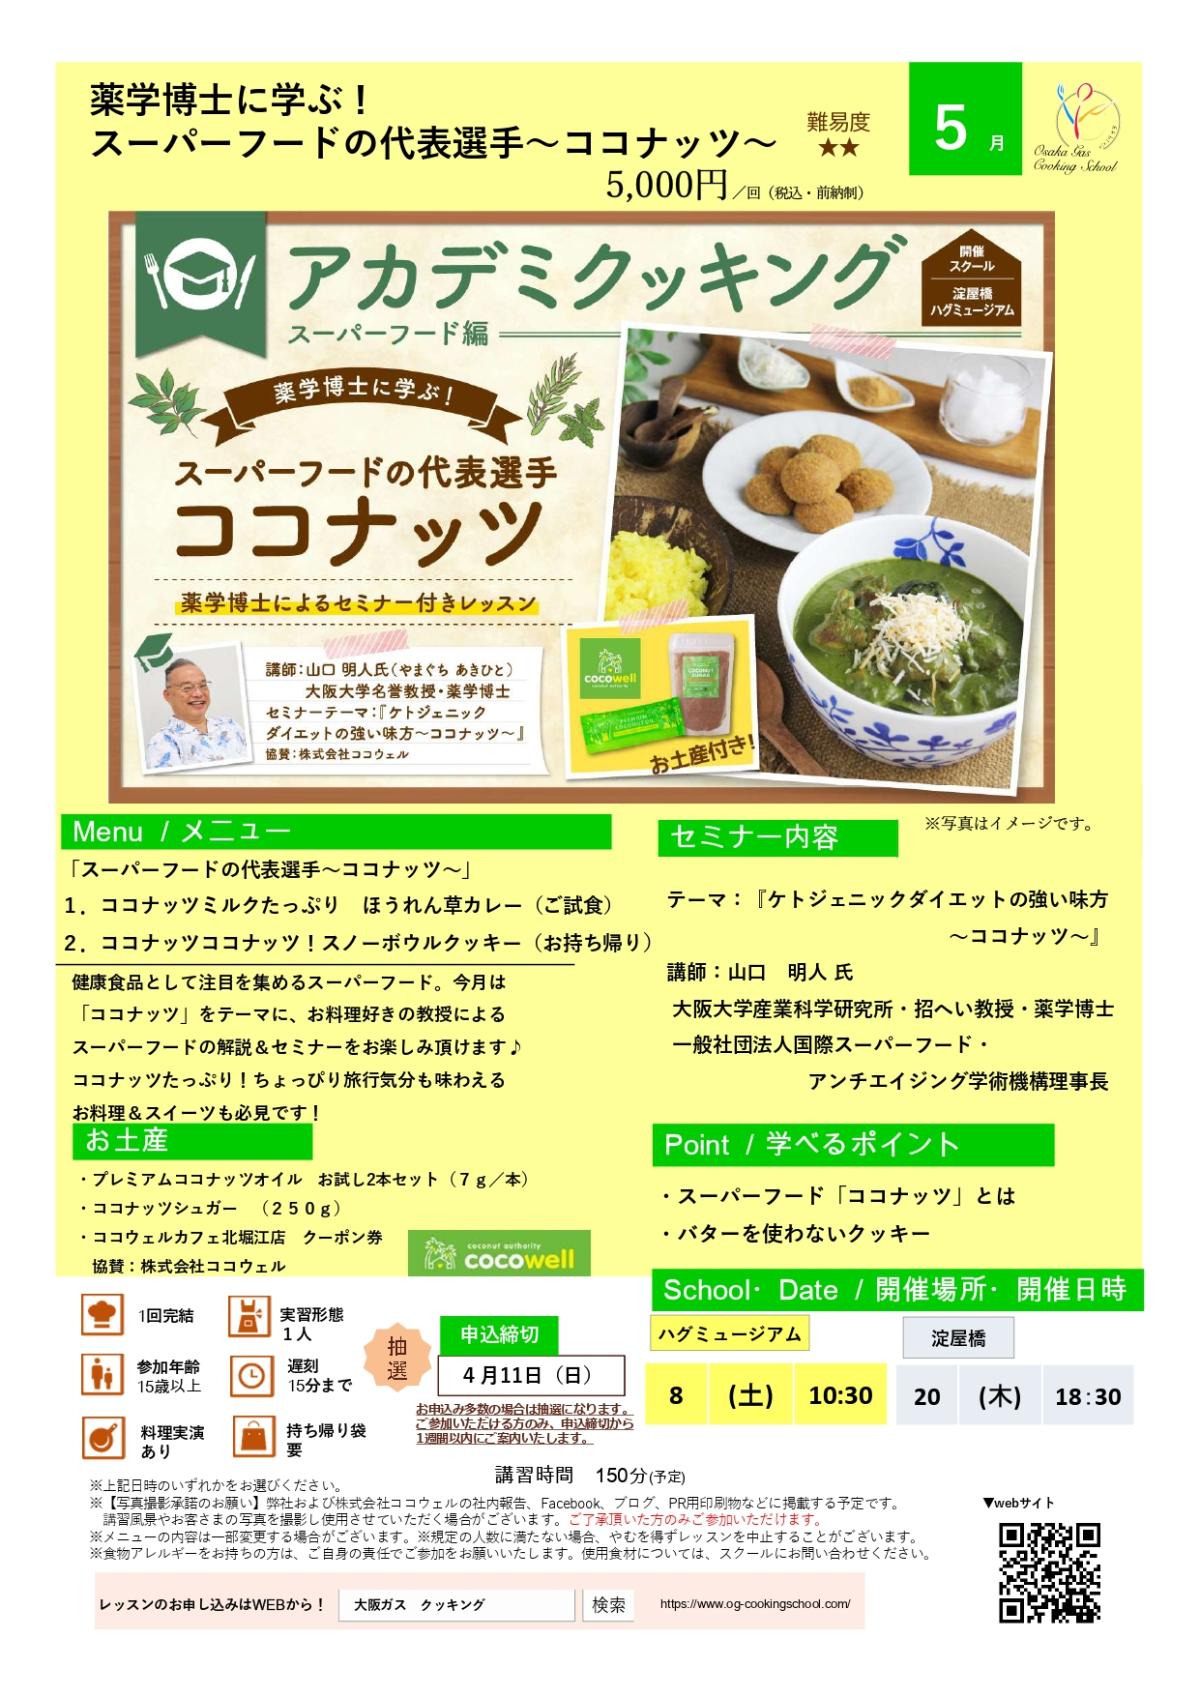 食の資格“栄養コンシェルジュ”が導入された大阪ガス クッキングスクールがアカデミクッキング ～ココナッツ～を開催します【栄養 コンシェルジュ取得後のご活躍】